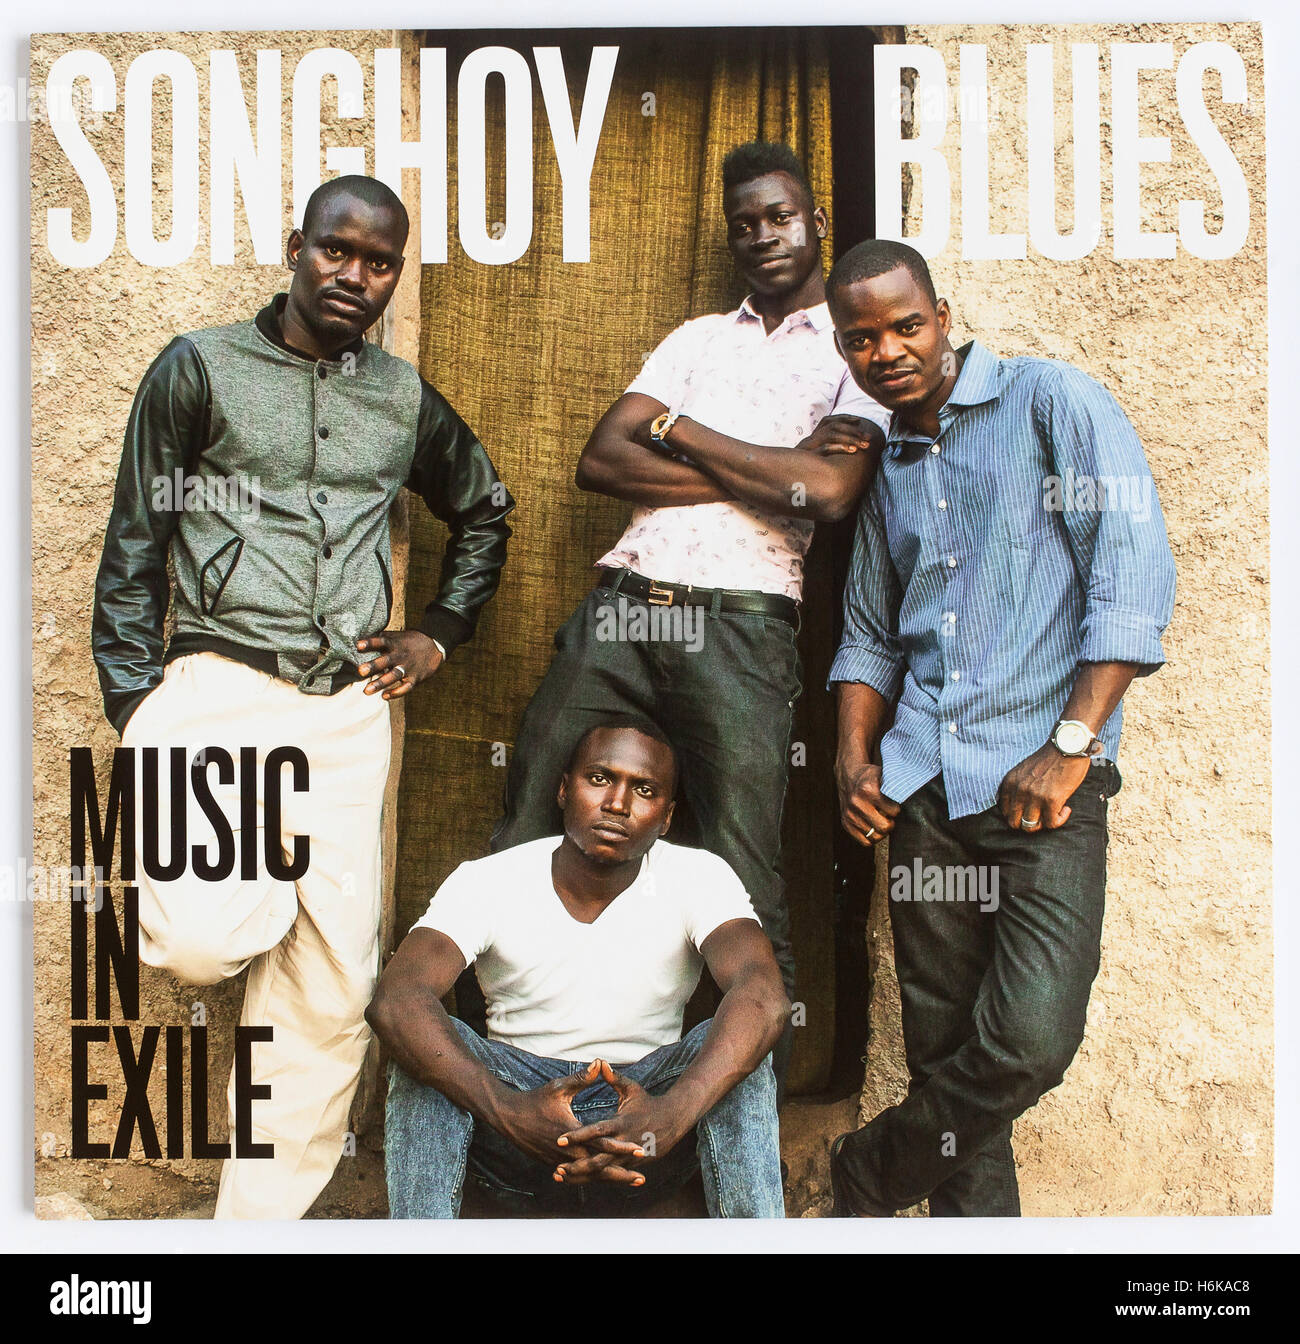 Couverture de 'Music in exil', album 2015 de Songhoy Blues sur Transgressive Records - usage éditorial uniquement Banque D'Images